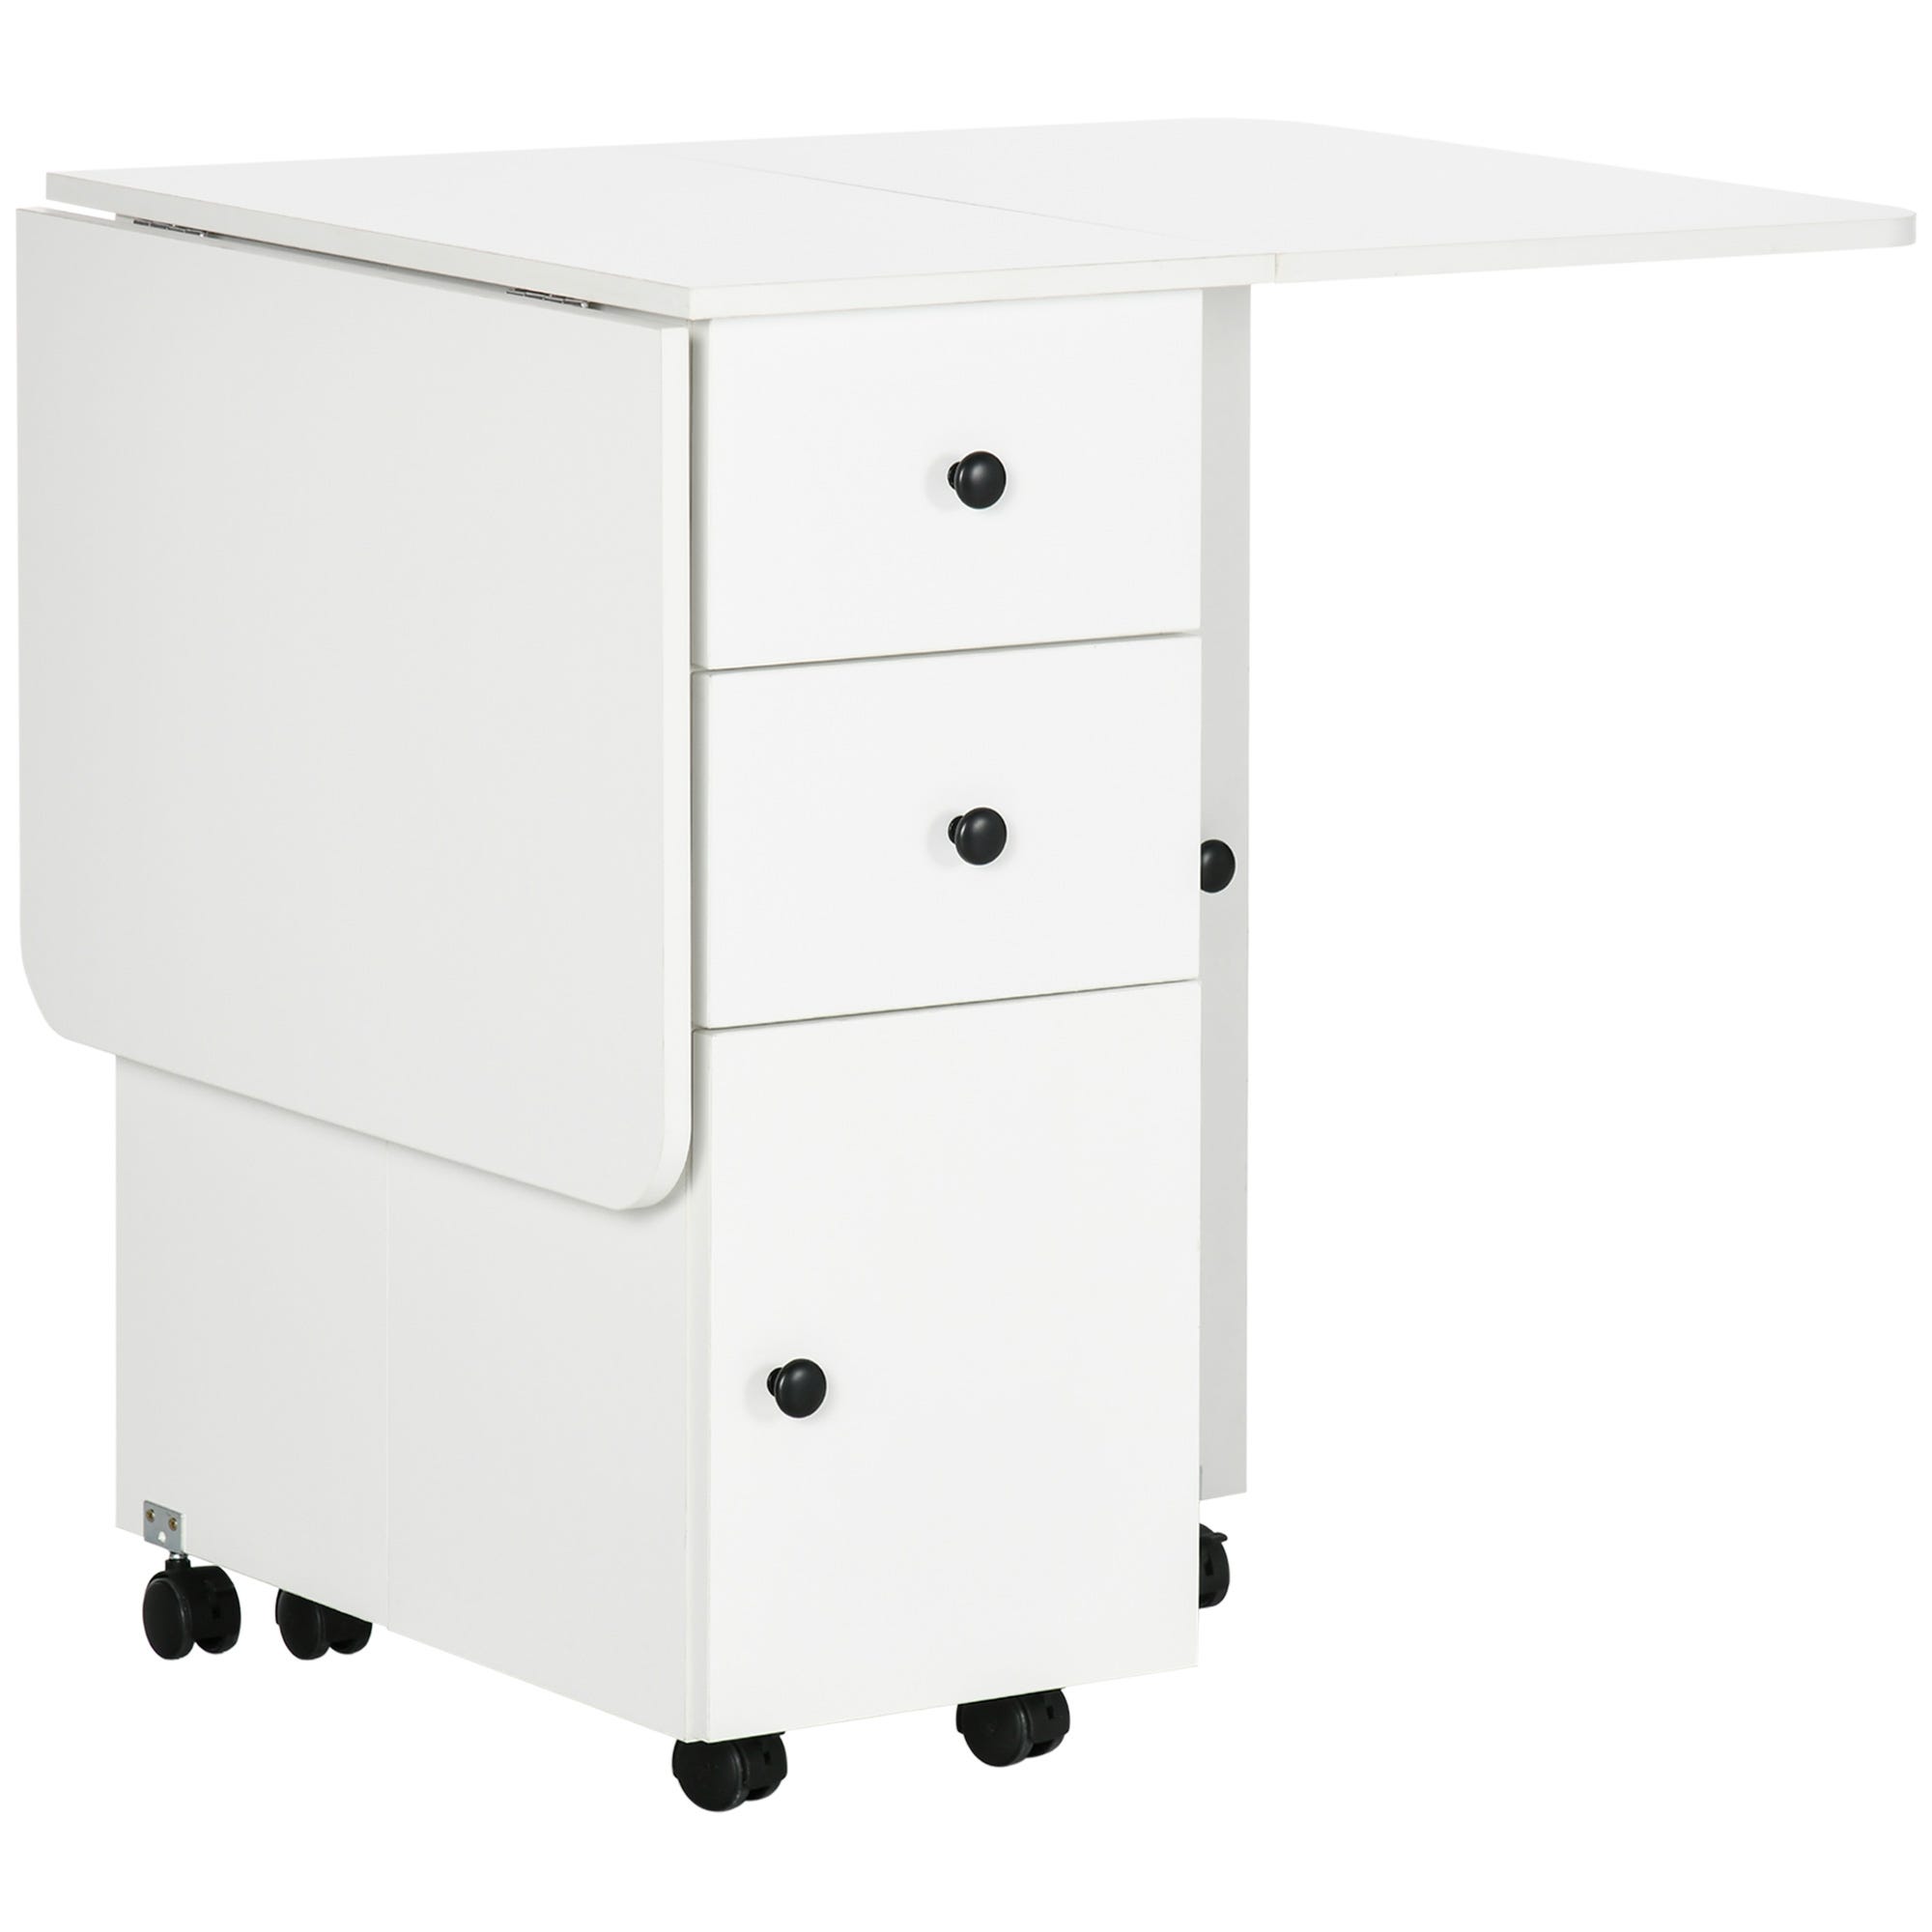 Table pliable - 2 tiroirs, placard, niche - panneaux aspect bois